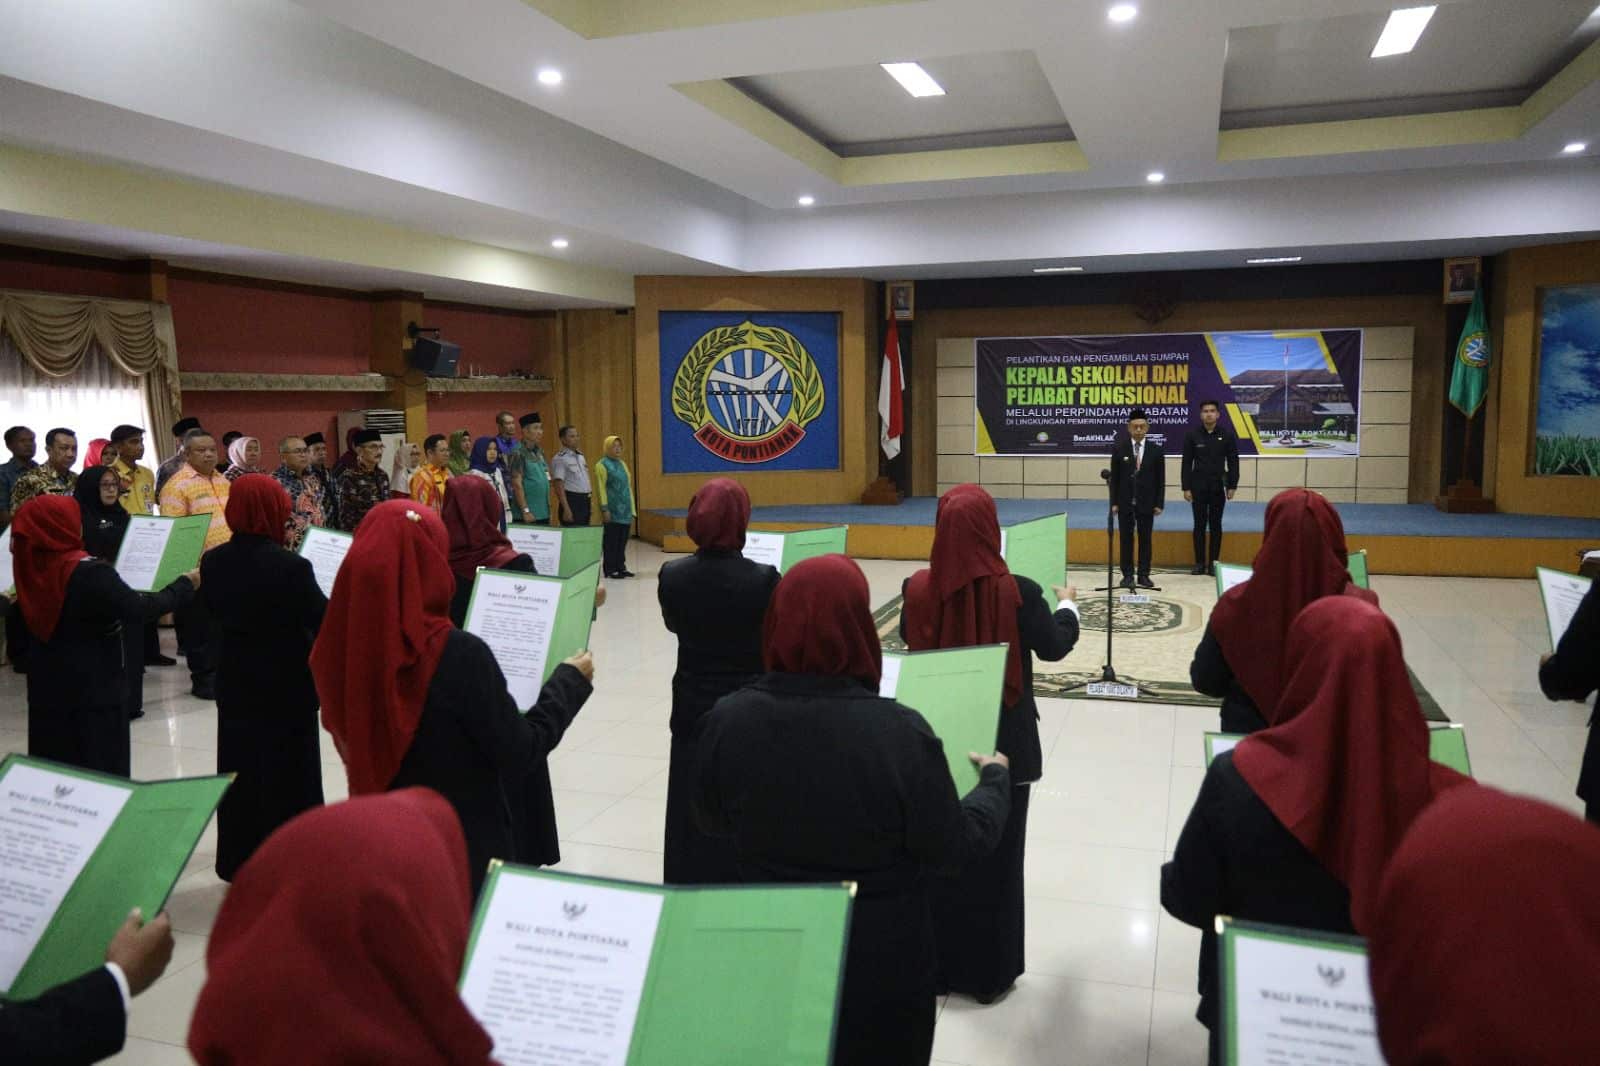 Wali Kota Pontianak, Edi Rusdi Kamtono melantik 31 Kepala Sekolah di lingkungan Pemkot  Pontianak. (Foto: Kominfo Pontianak)